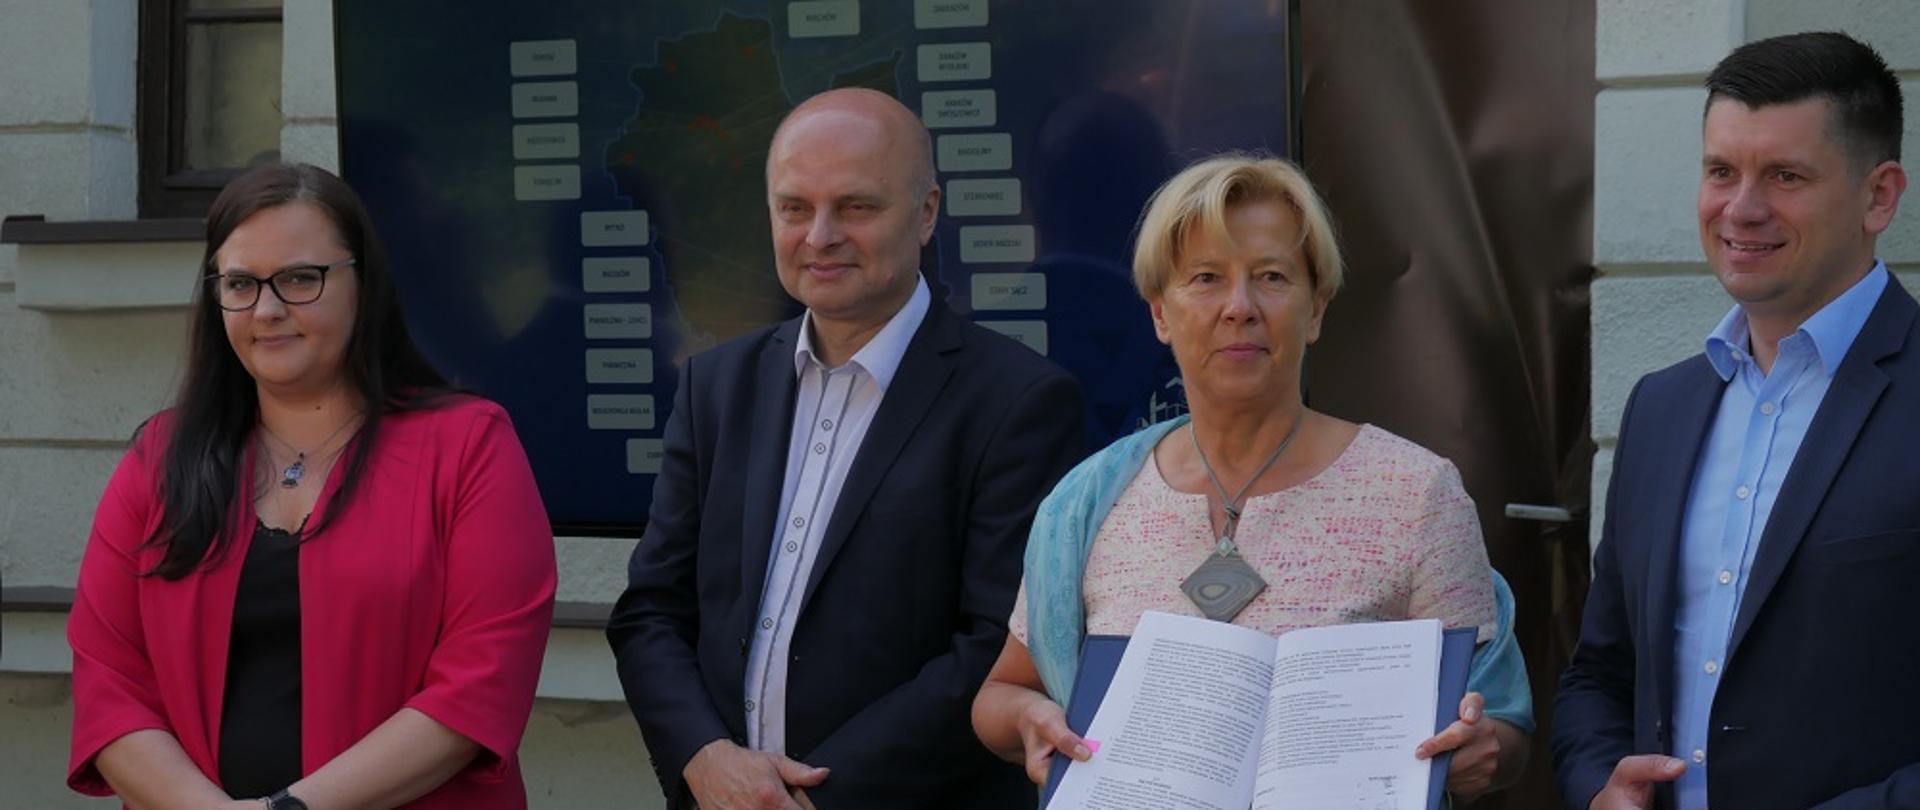 Na zdjęciu są cztery osoby: dwie kobiety i dwóch mężczyzn, w tym minister Małgorzata Jarosińska-Jedynak (pierwsza z lewej). Małgorzata Zielińska, członek zarządu PKP trzyma podpisaną umowę